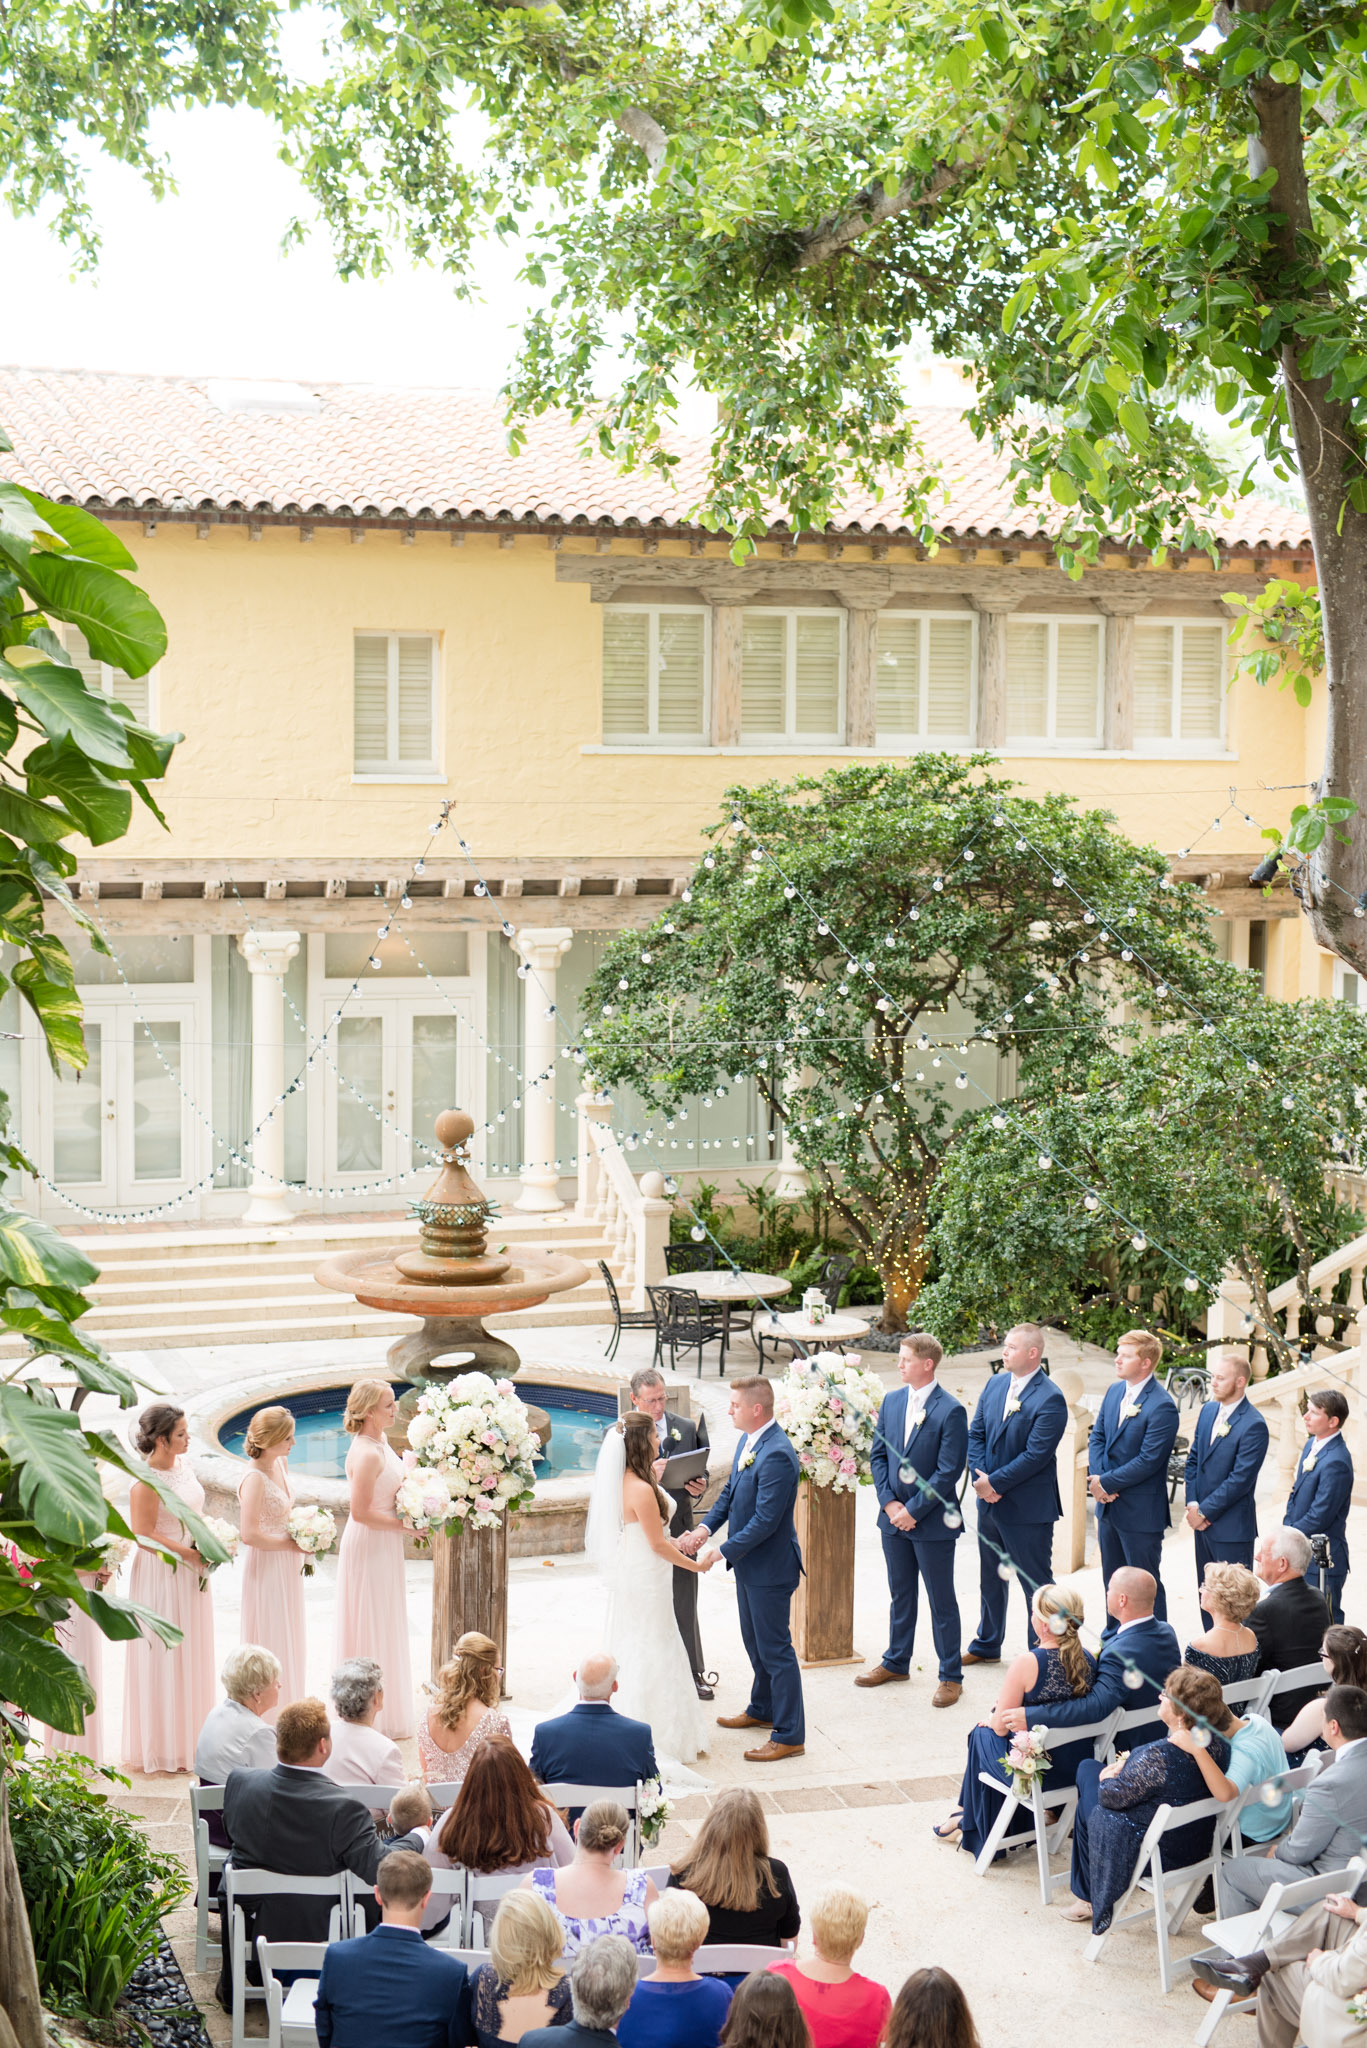 Wedding ceremony in a garden courtyard.